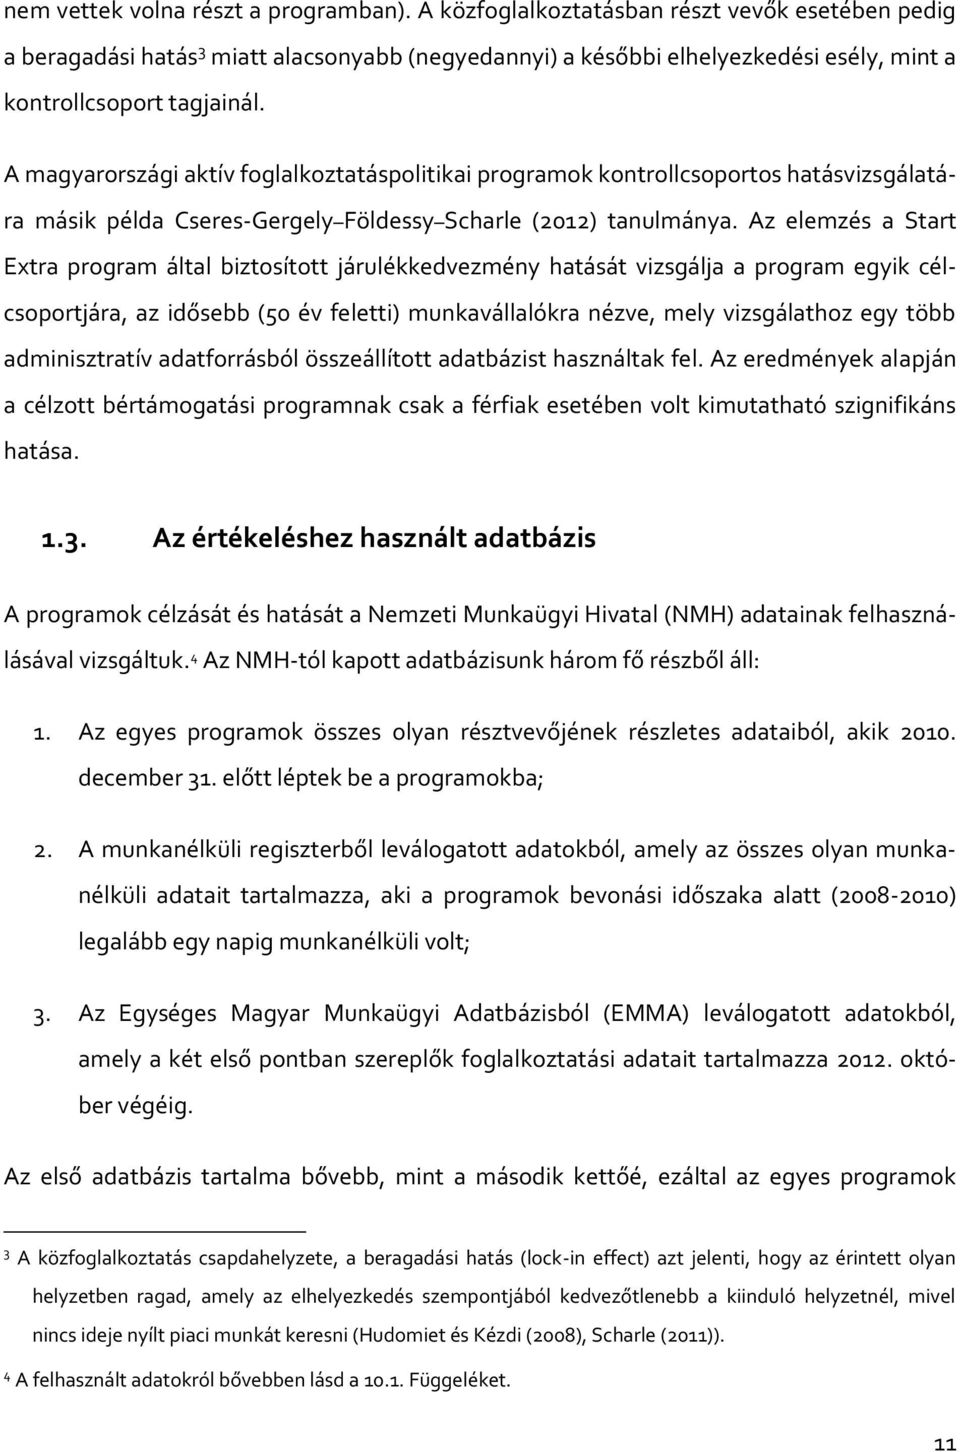 A magyarországi aktív foglalkoztatáspolitikai programok kontrollcsoportos hatásvizsgálatára másik példa Cseres-Gergely Földessy Scharle (2012) tanulmánya.